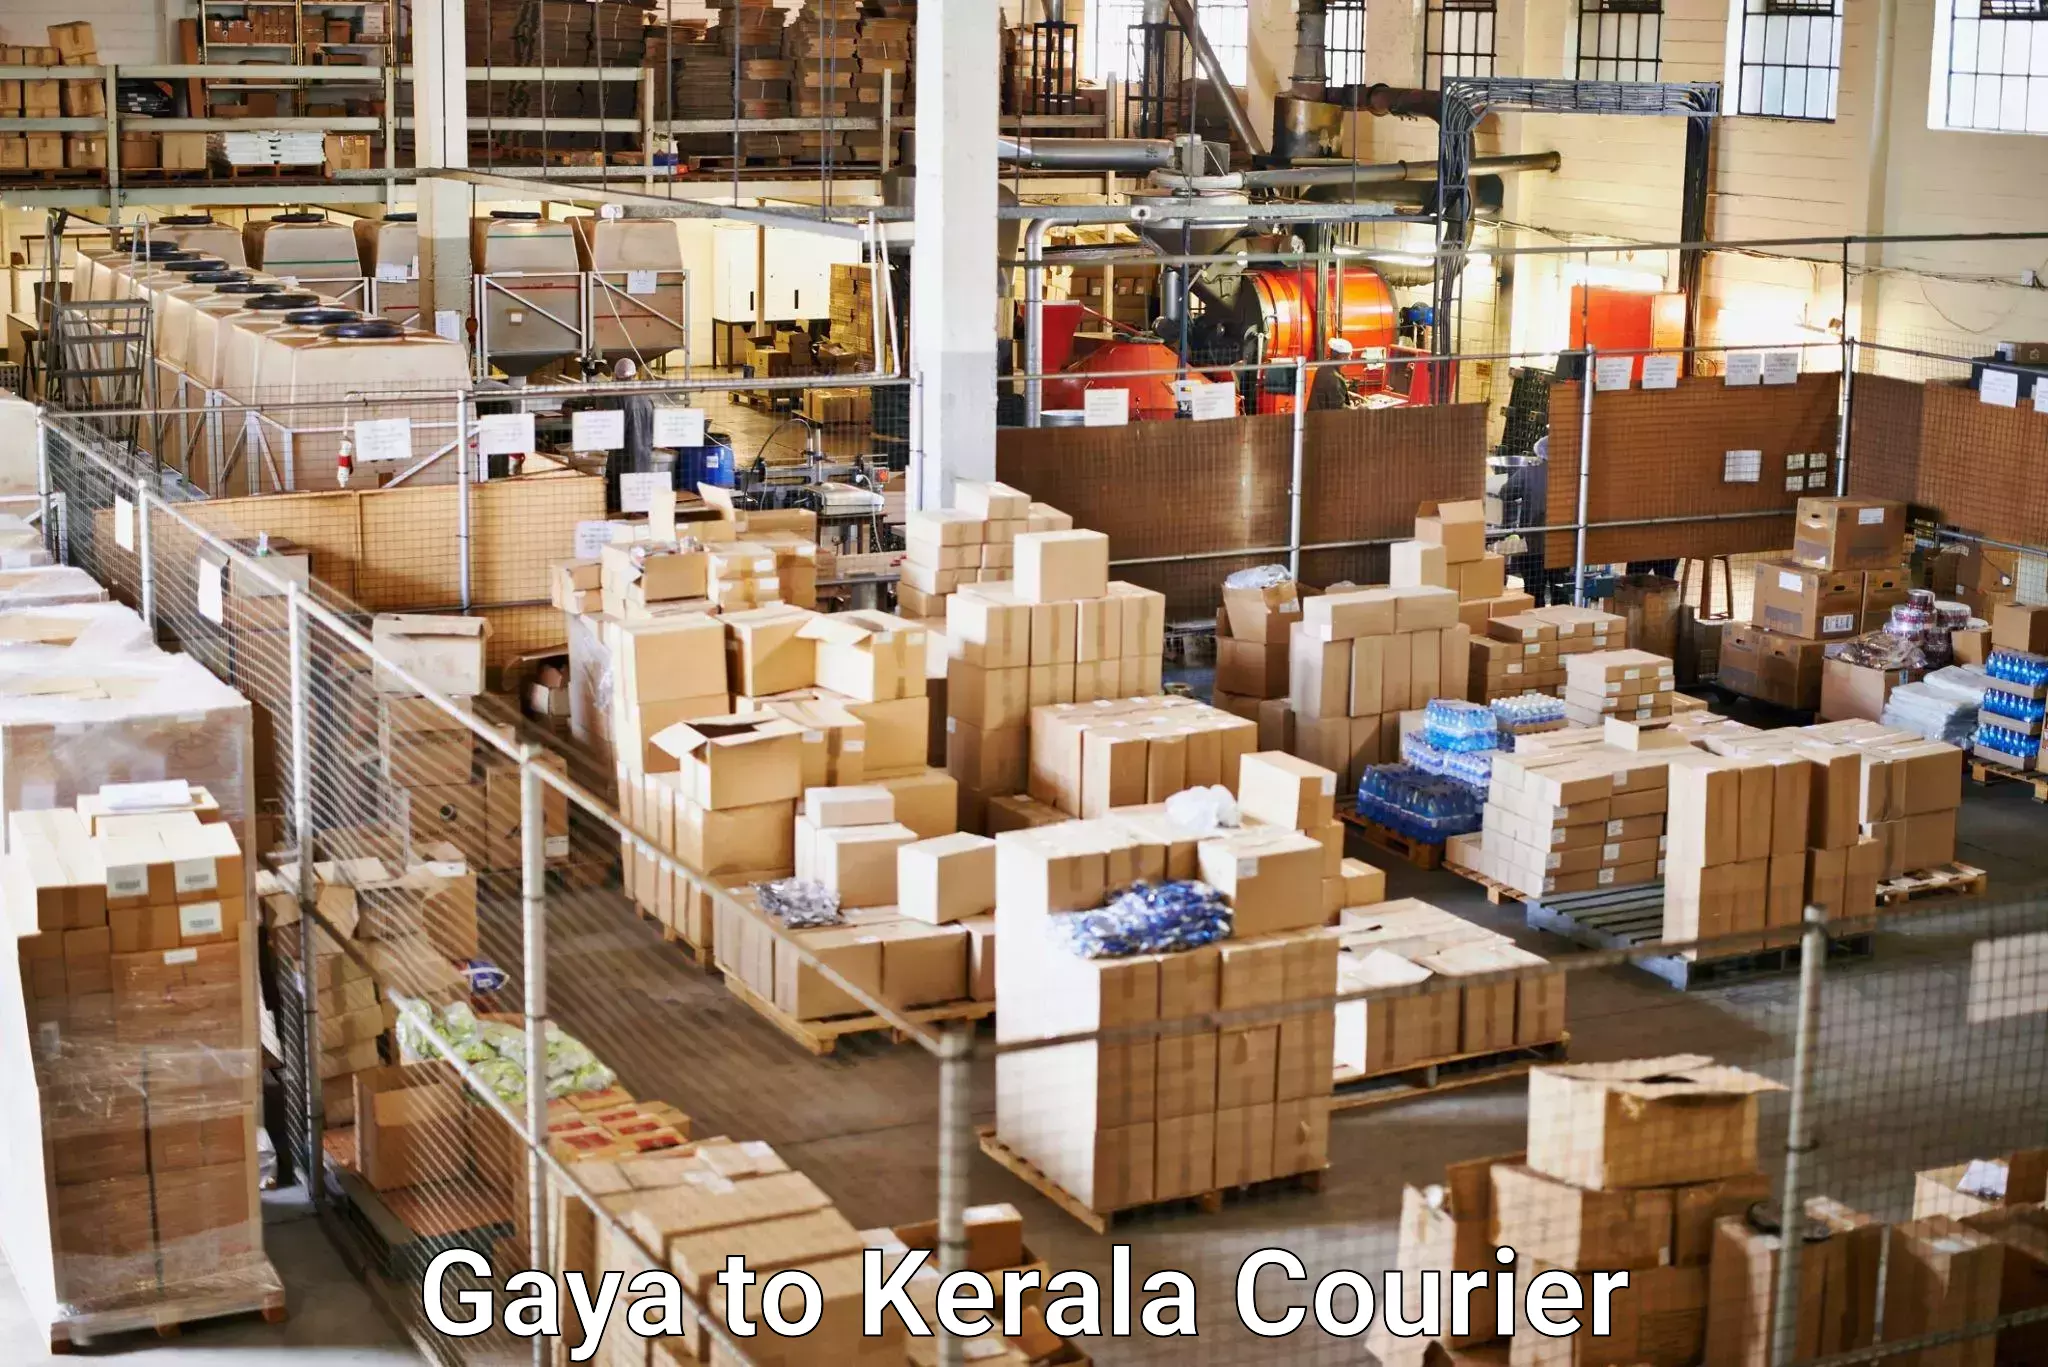 Holiday shipping services Gaya to Nochad